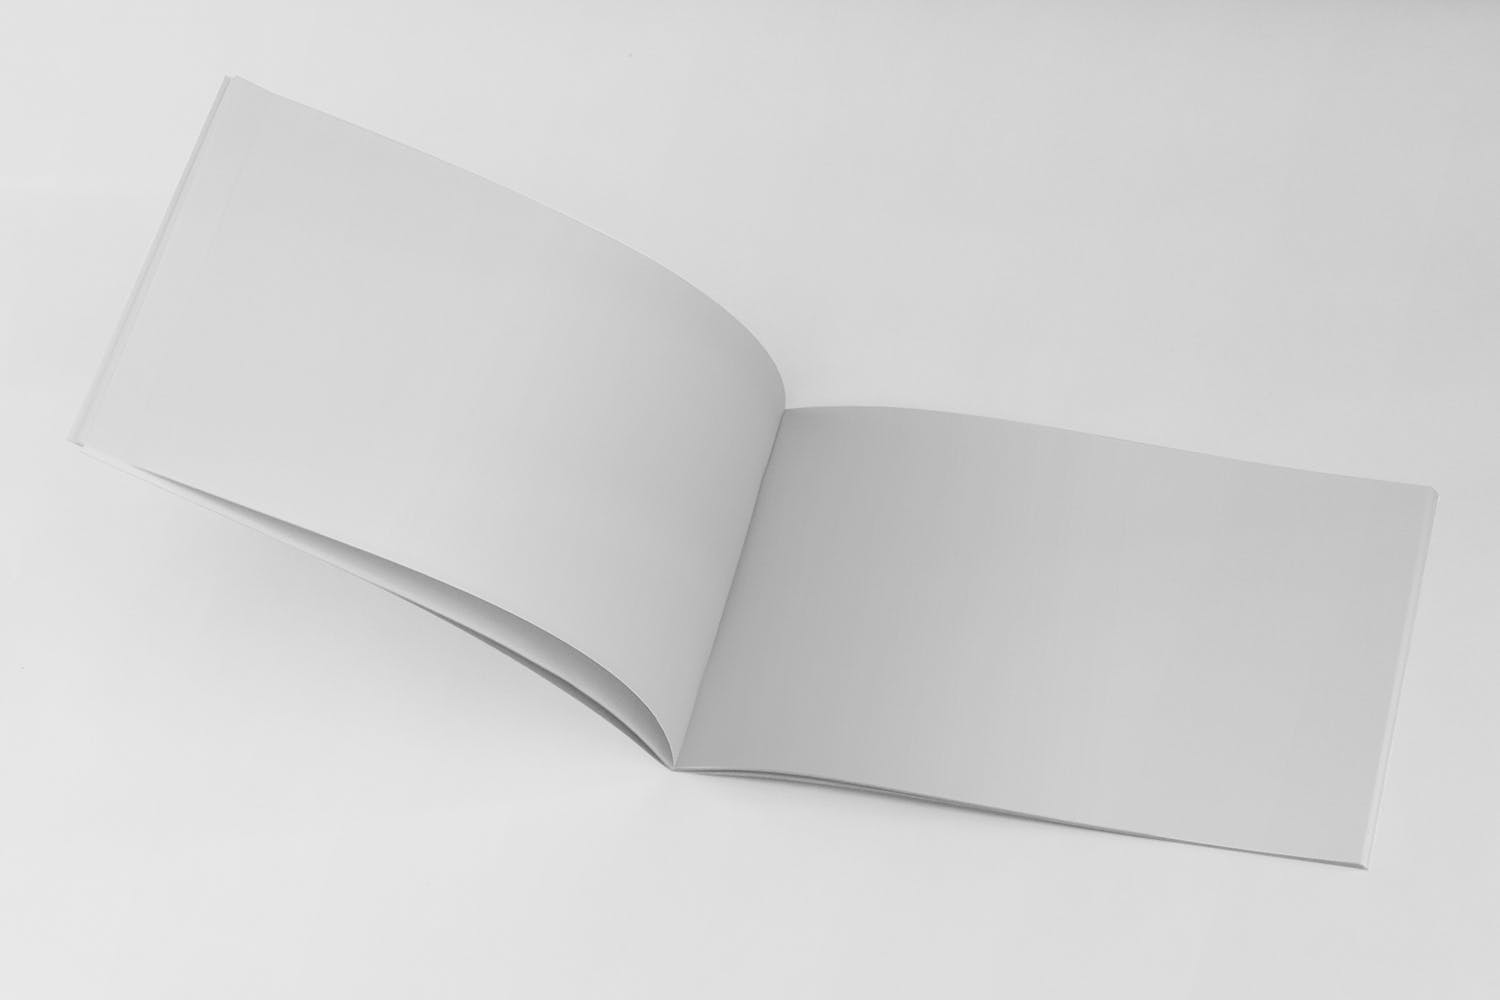 美国信纸规格宣传册内页版式设计翻页视图样机蚂蚁素材精选 US Half Letter Brochure Mockup Folded Page插图(1)